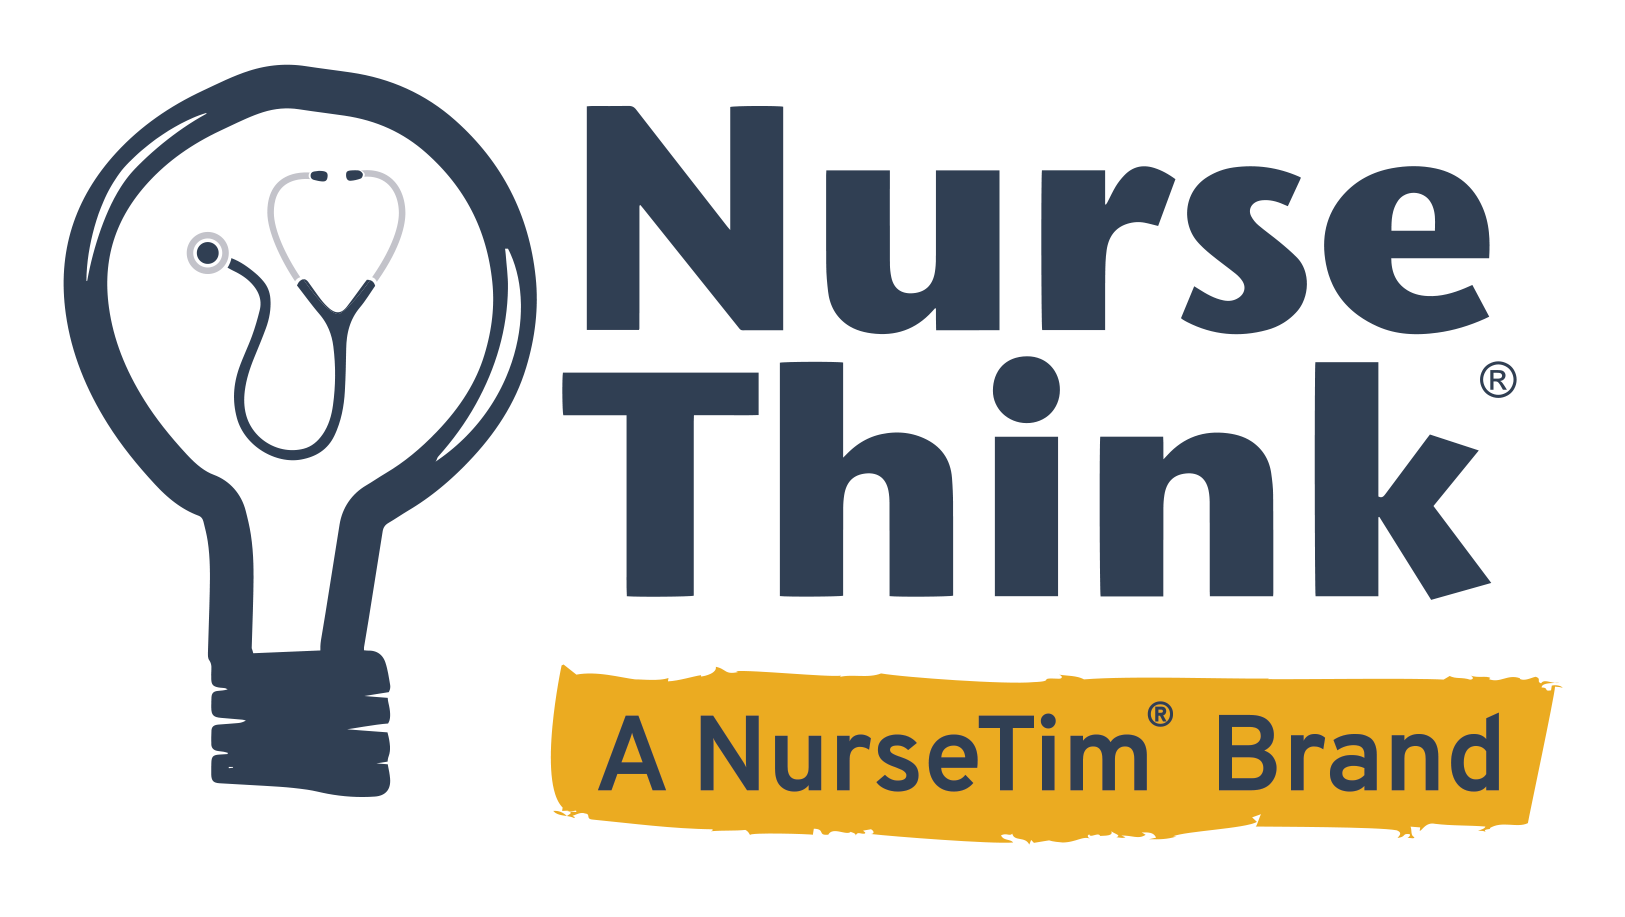 NurseThink | a NurseTim Brand